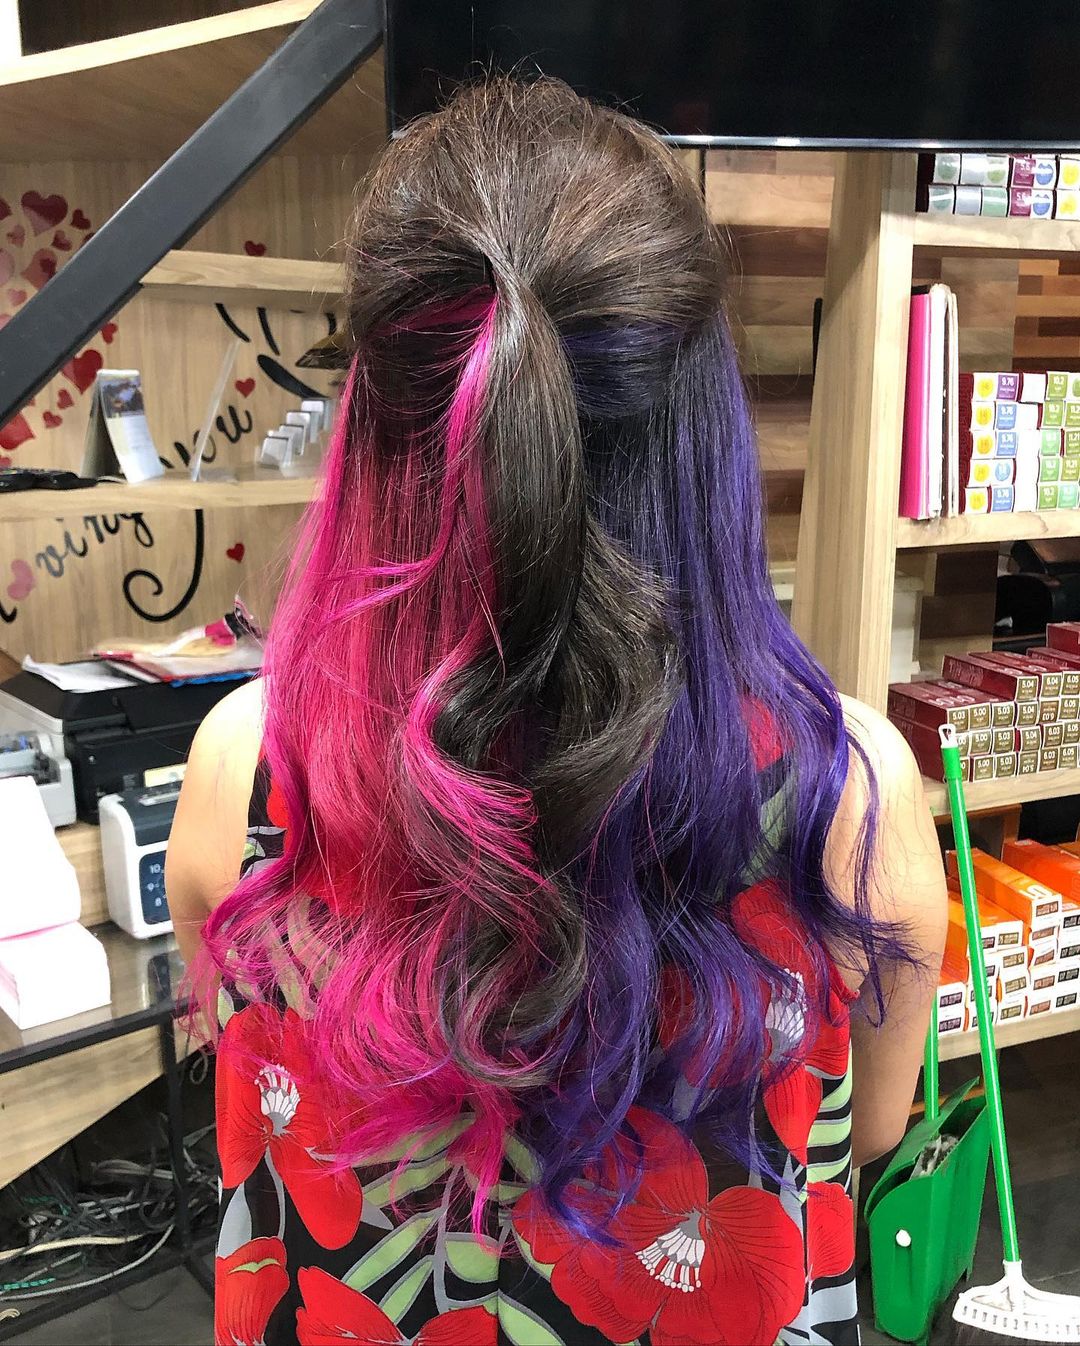 peekaboo violet et rose sur cheveux noirs